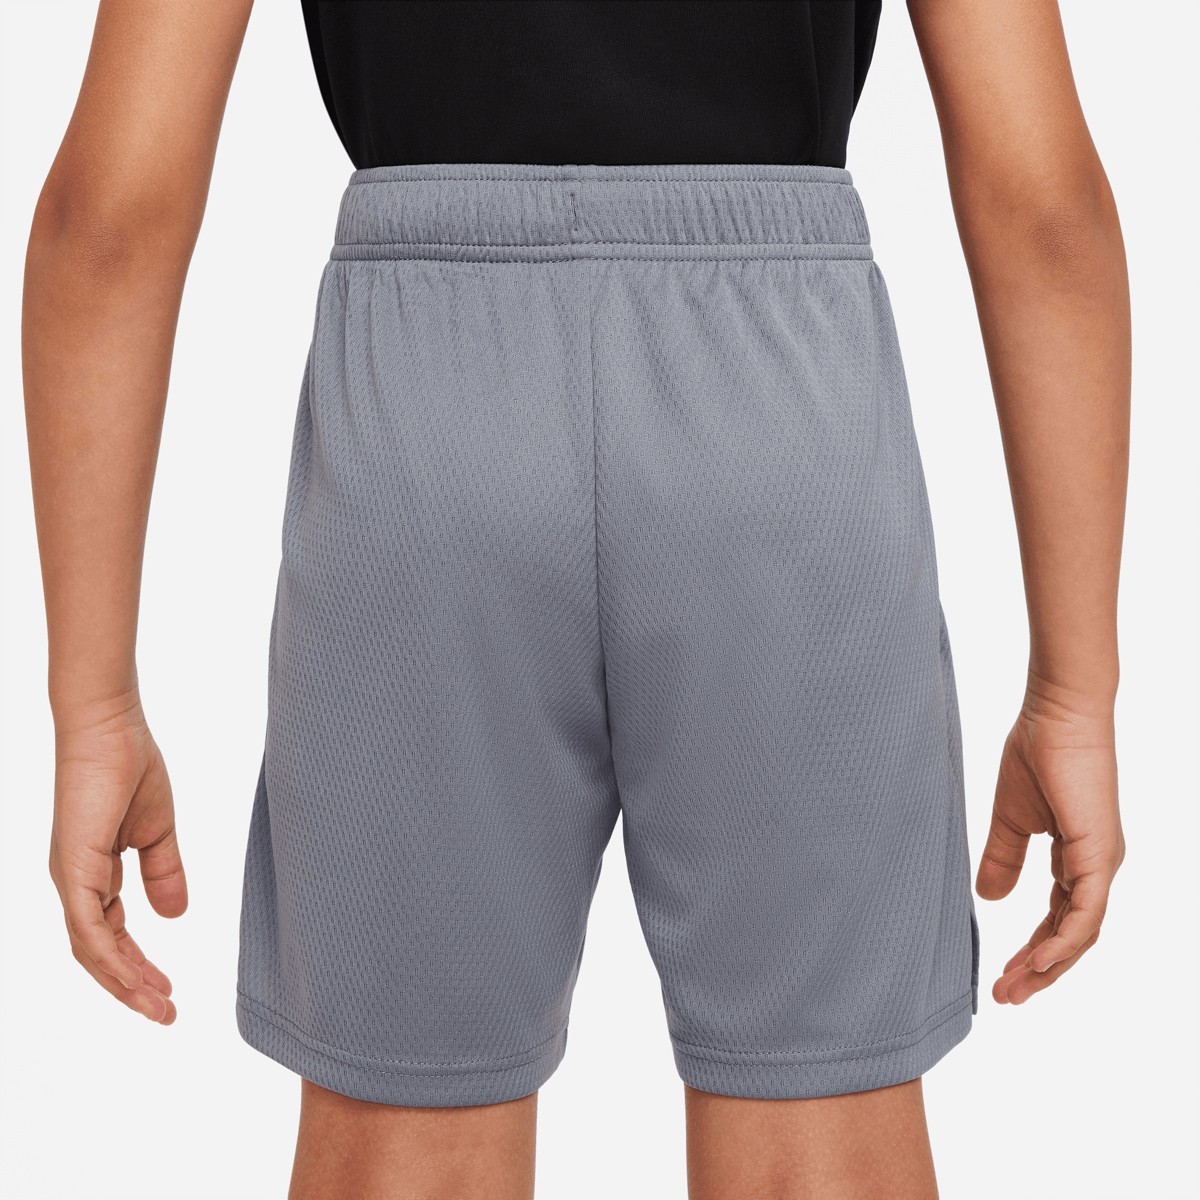 Теннисные шорты детские Nike Boys Short smoke grey/black